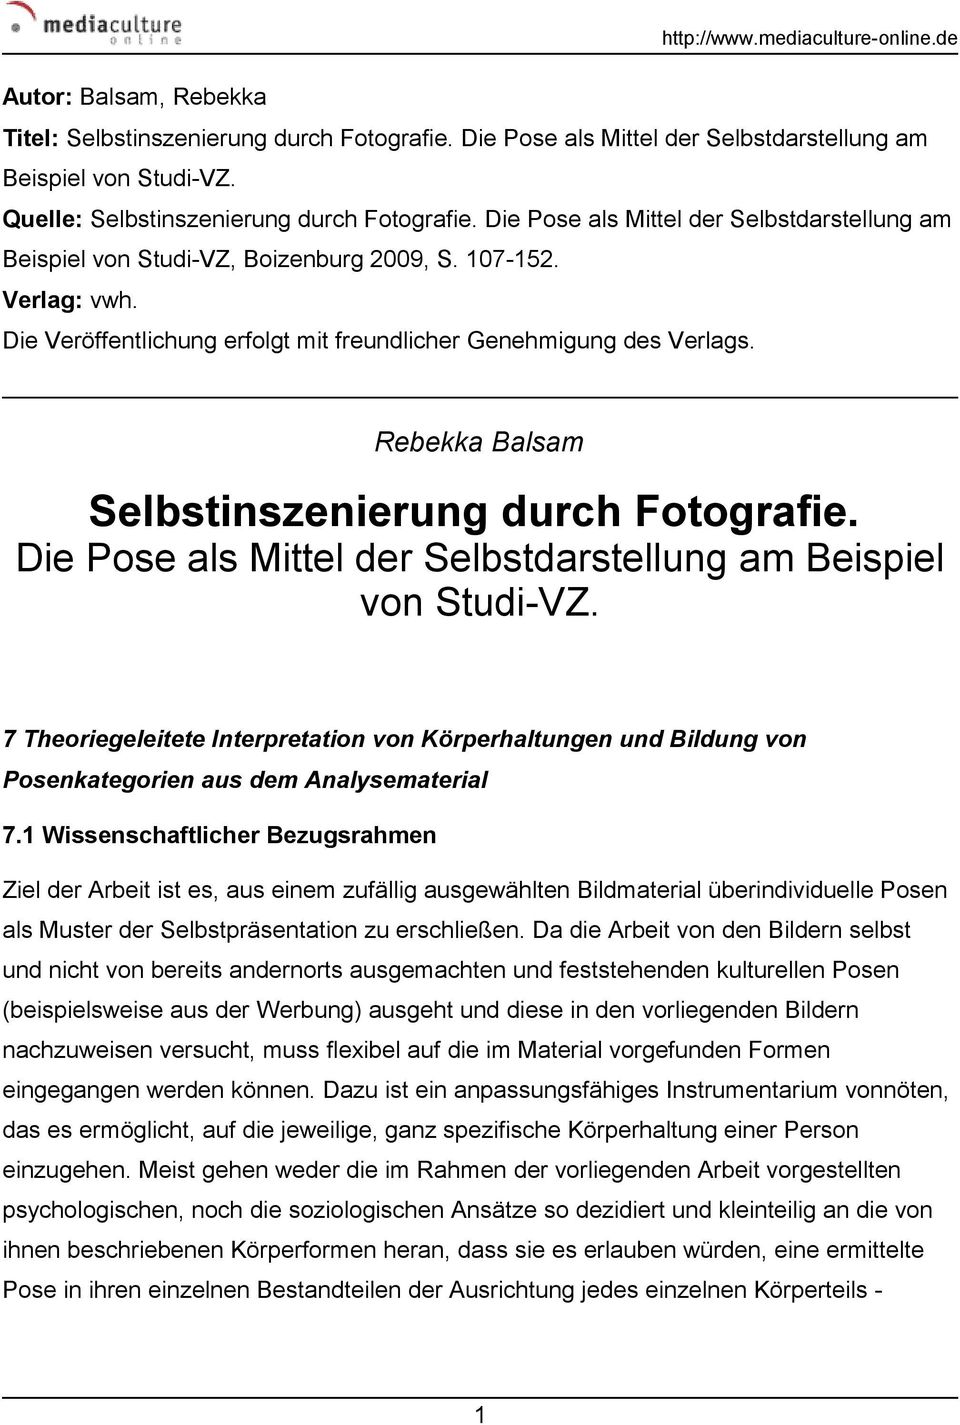 Rebekka Balsam Selbstinszenierung durch Fotografie. Die Pose als Mittel der Selbstdarstellung am Beispiel von Studi-VZ.